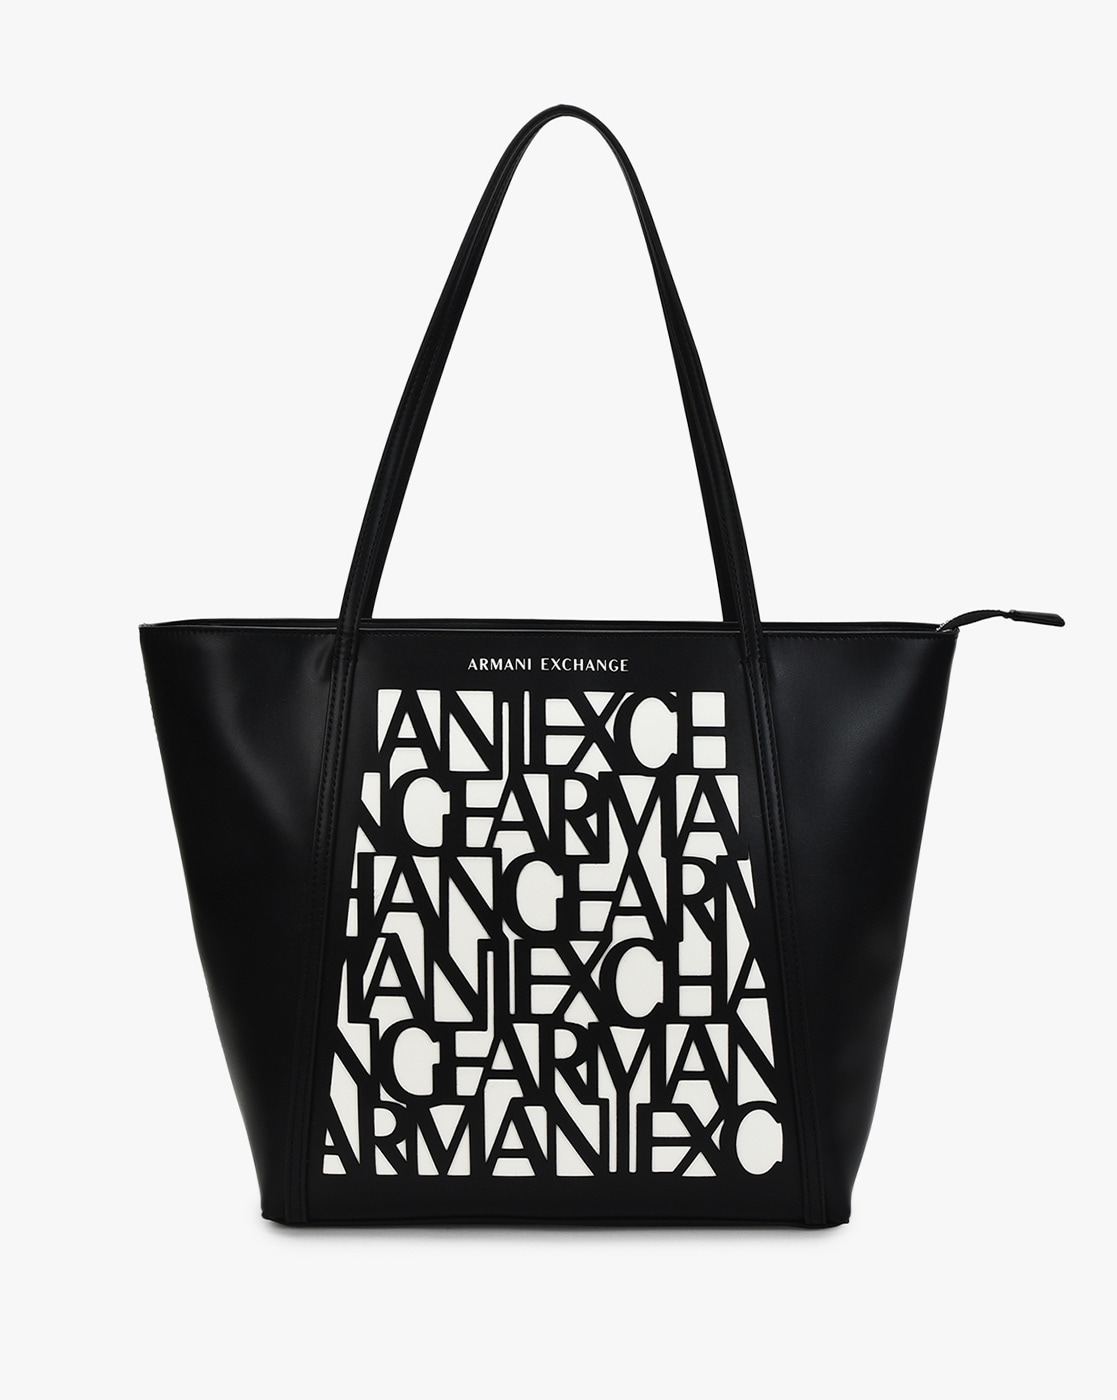 armani exchange bag price